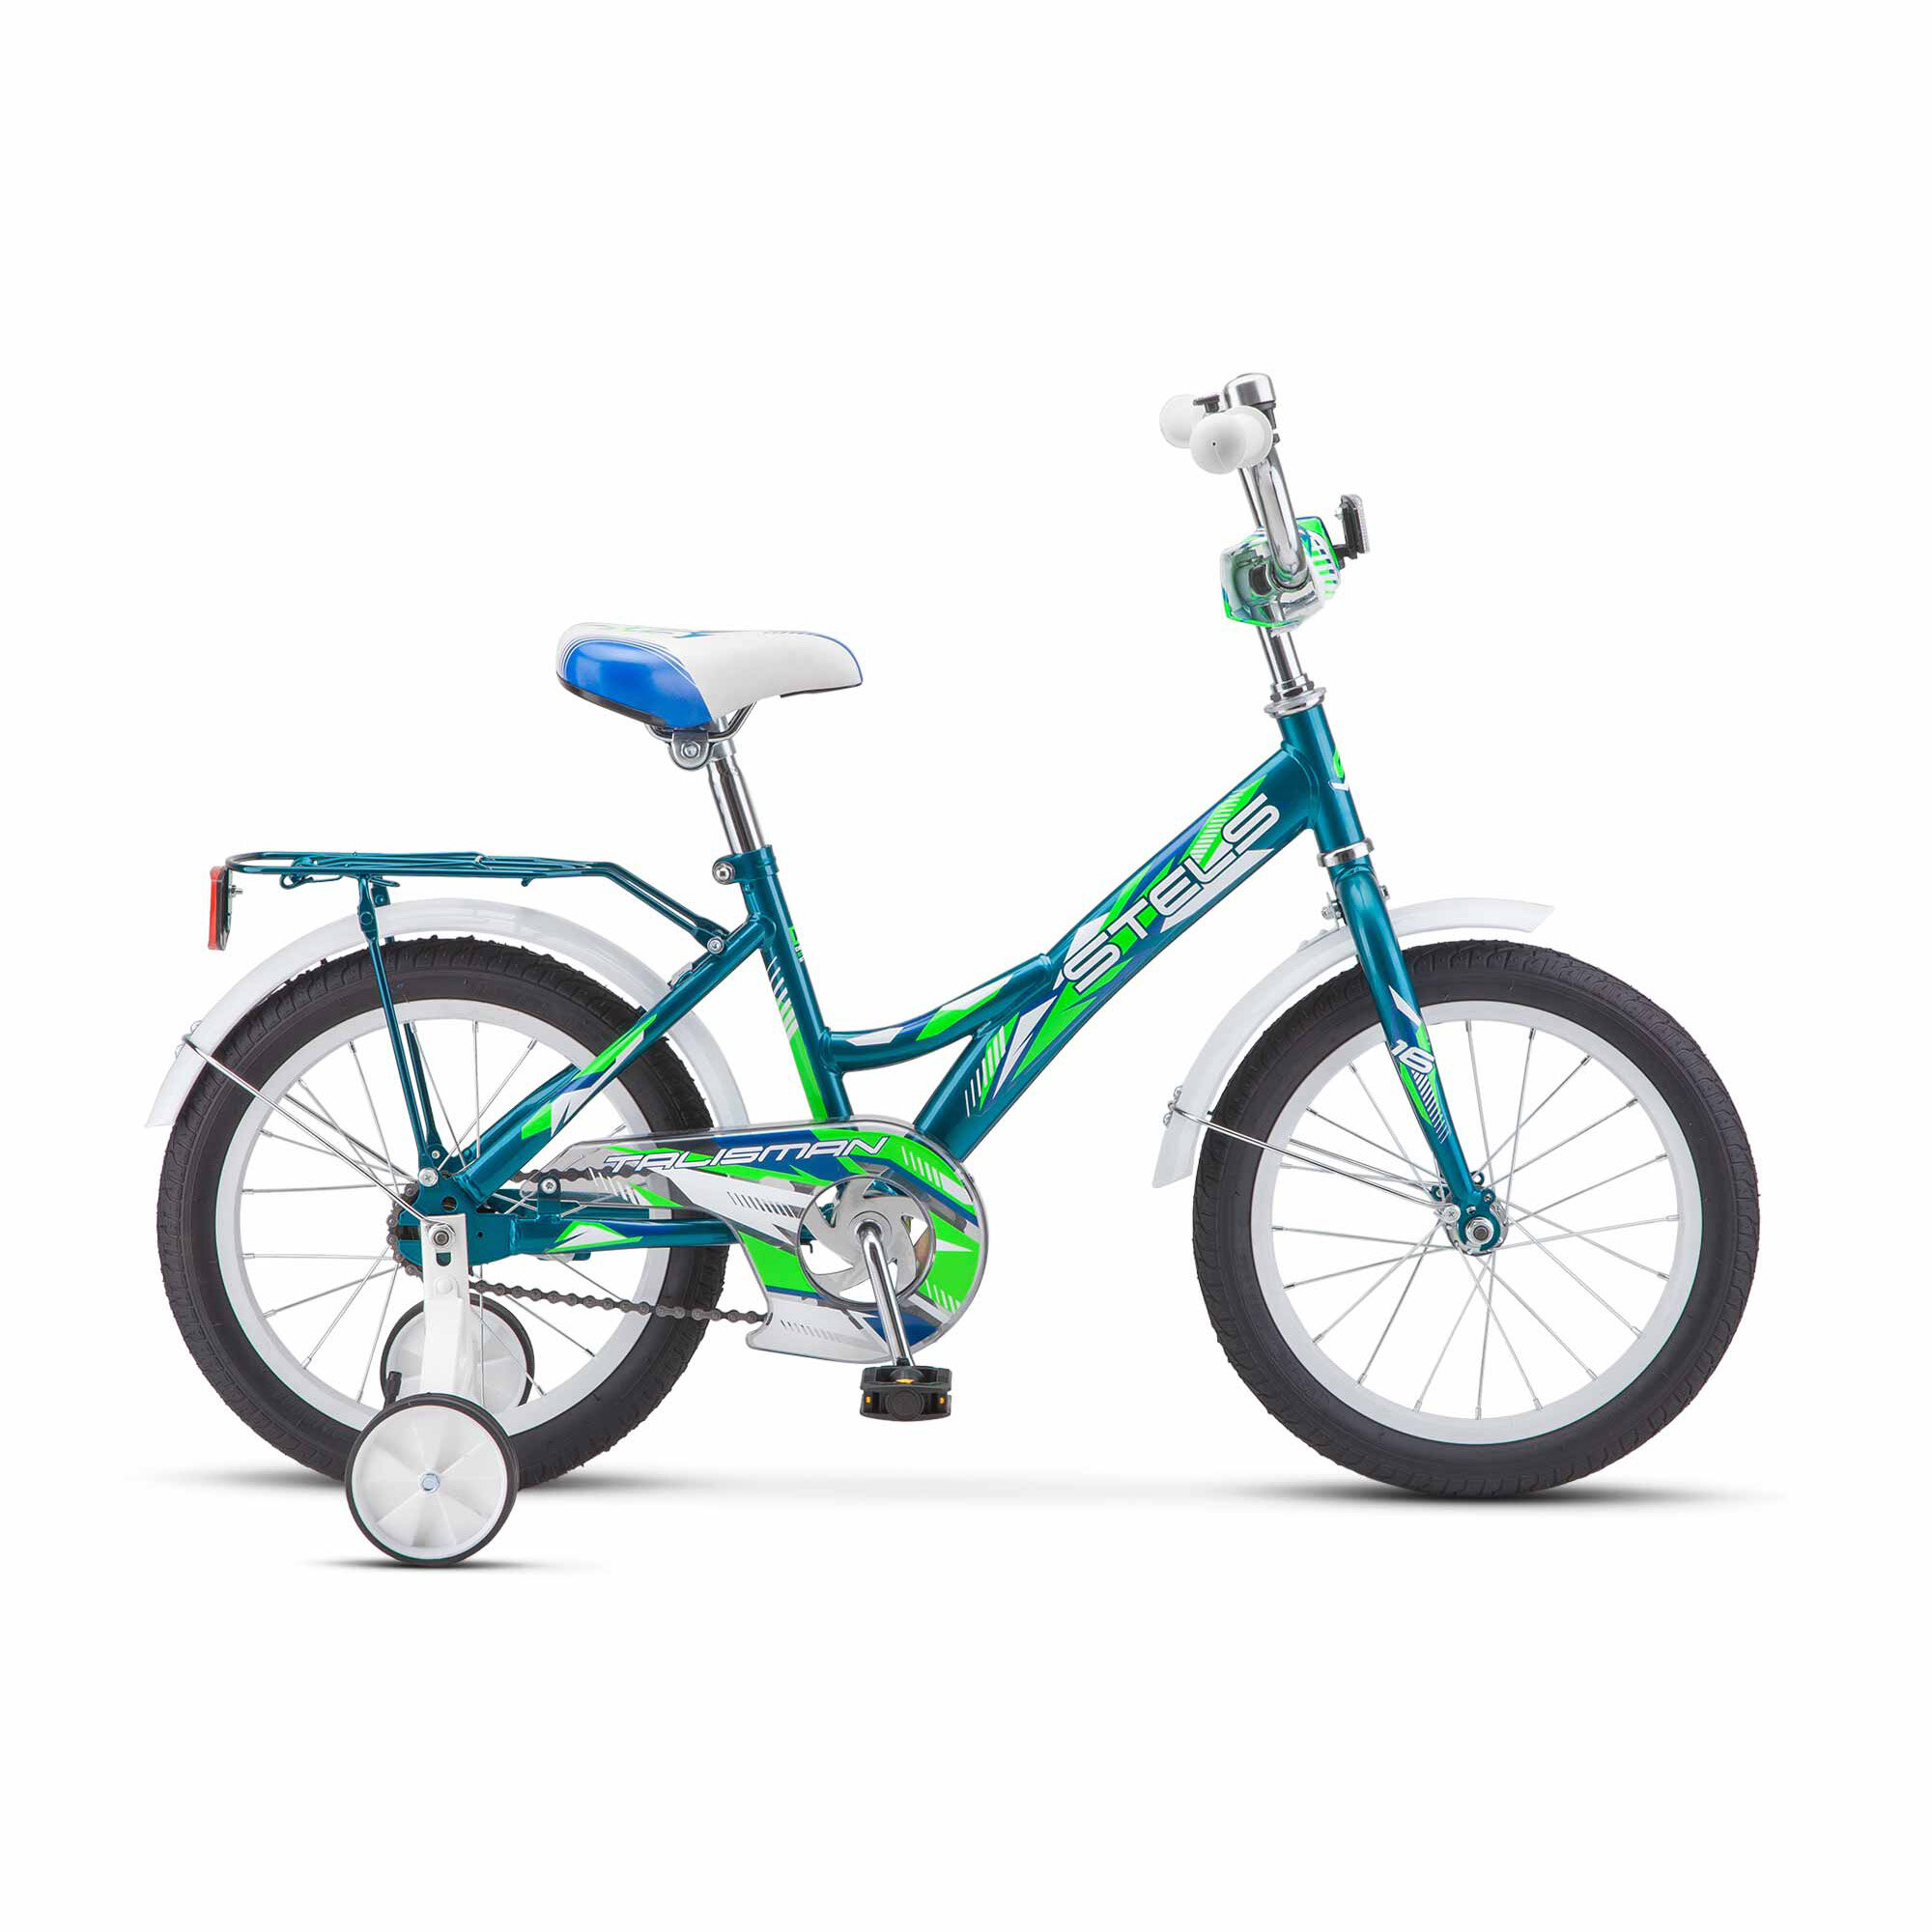 Детский велосипед STELS Talisman 18 Z010 (2018) морская волна 12" (требует финальной сборки)